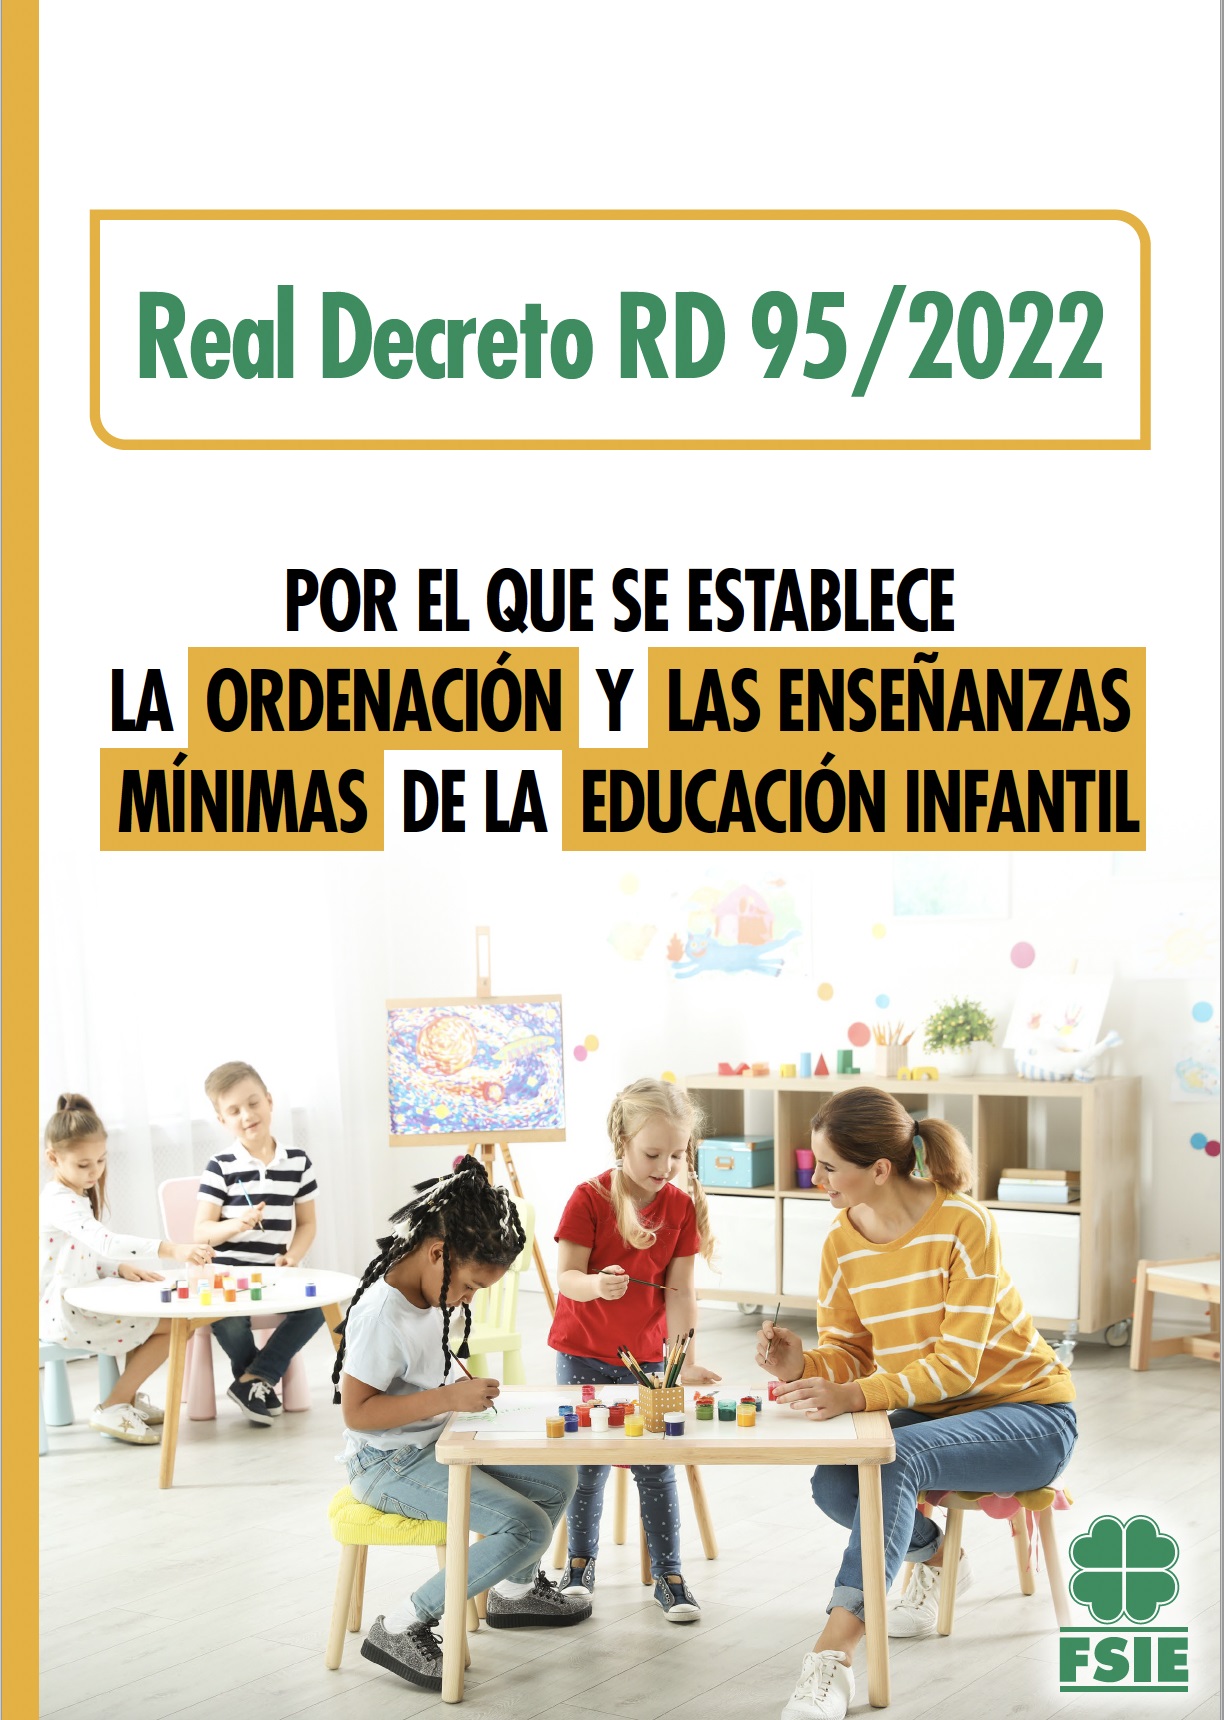 220202 ART WEB PUBLICADO EN EL BOE EL RD DE ENSEÑANZAS MÍNIMAS DE EDUCACIÓN INFANTIL